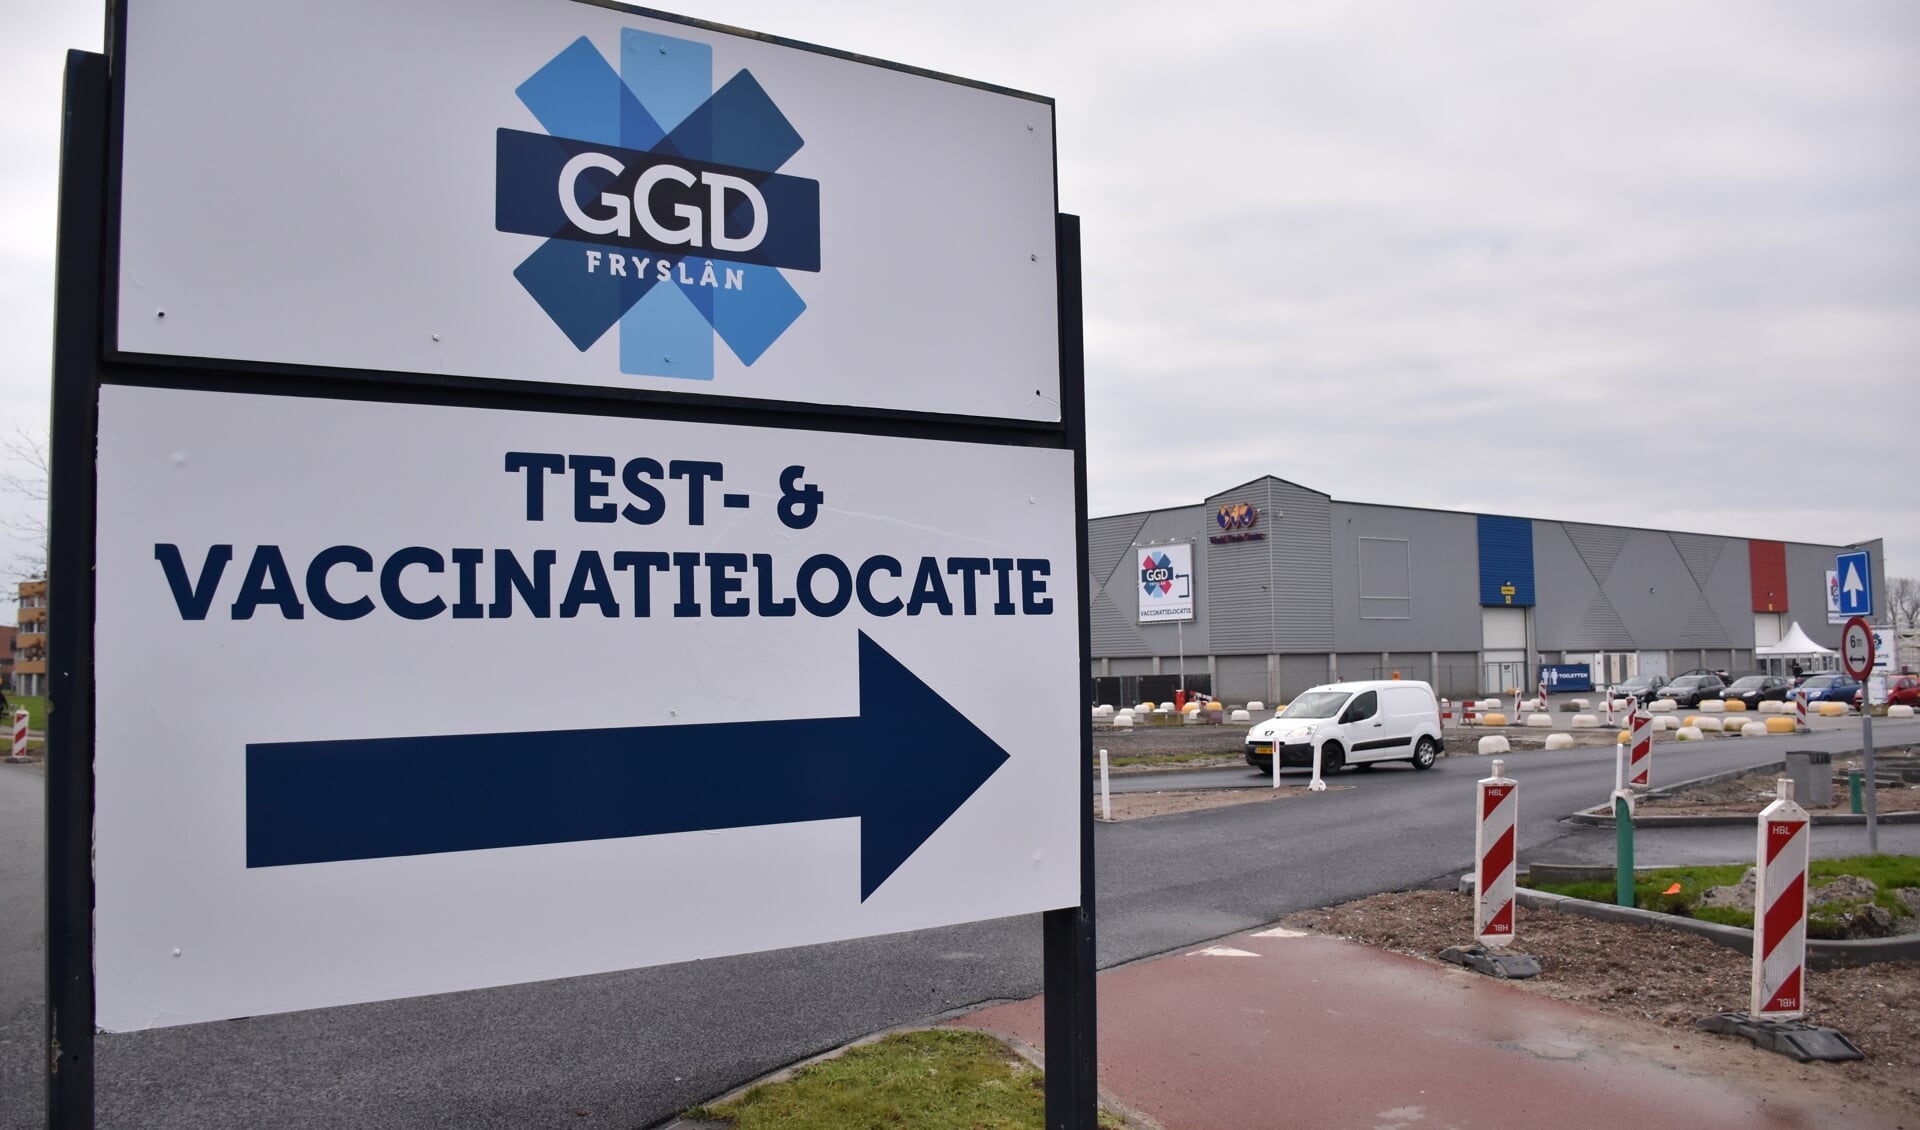 De test- en vaccinatielocatie van GGD Fryslân in Leeuwarden, bij het WTC Expo. Vanaf volgende week telt Friesland acht vaccinatielocaties tegen het corona virus.